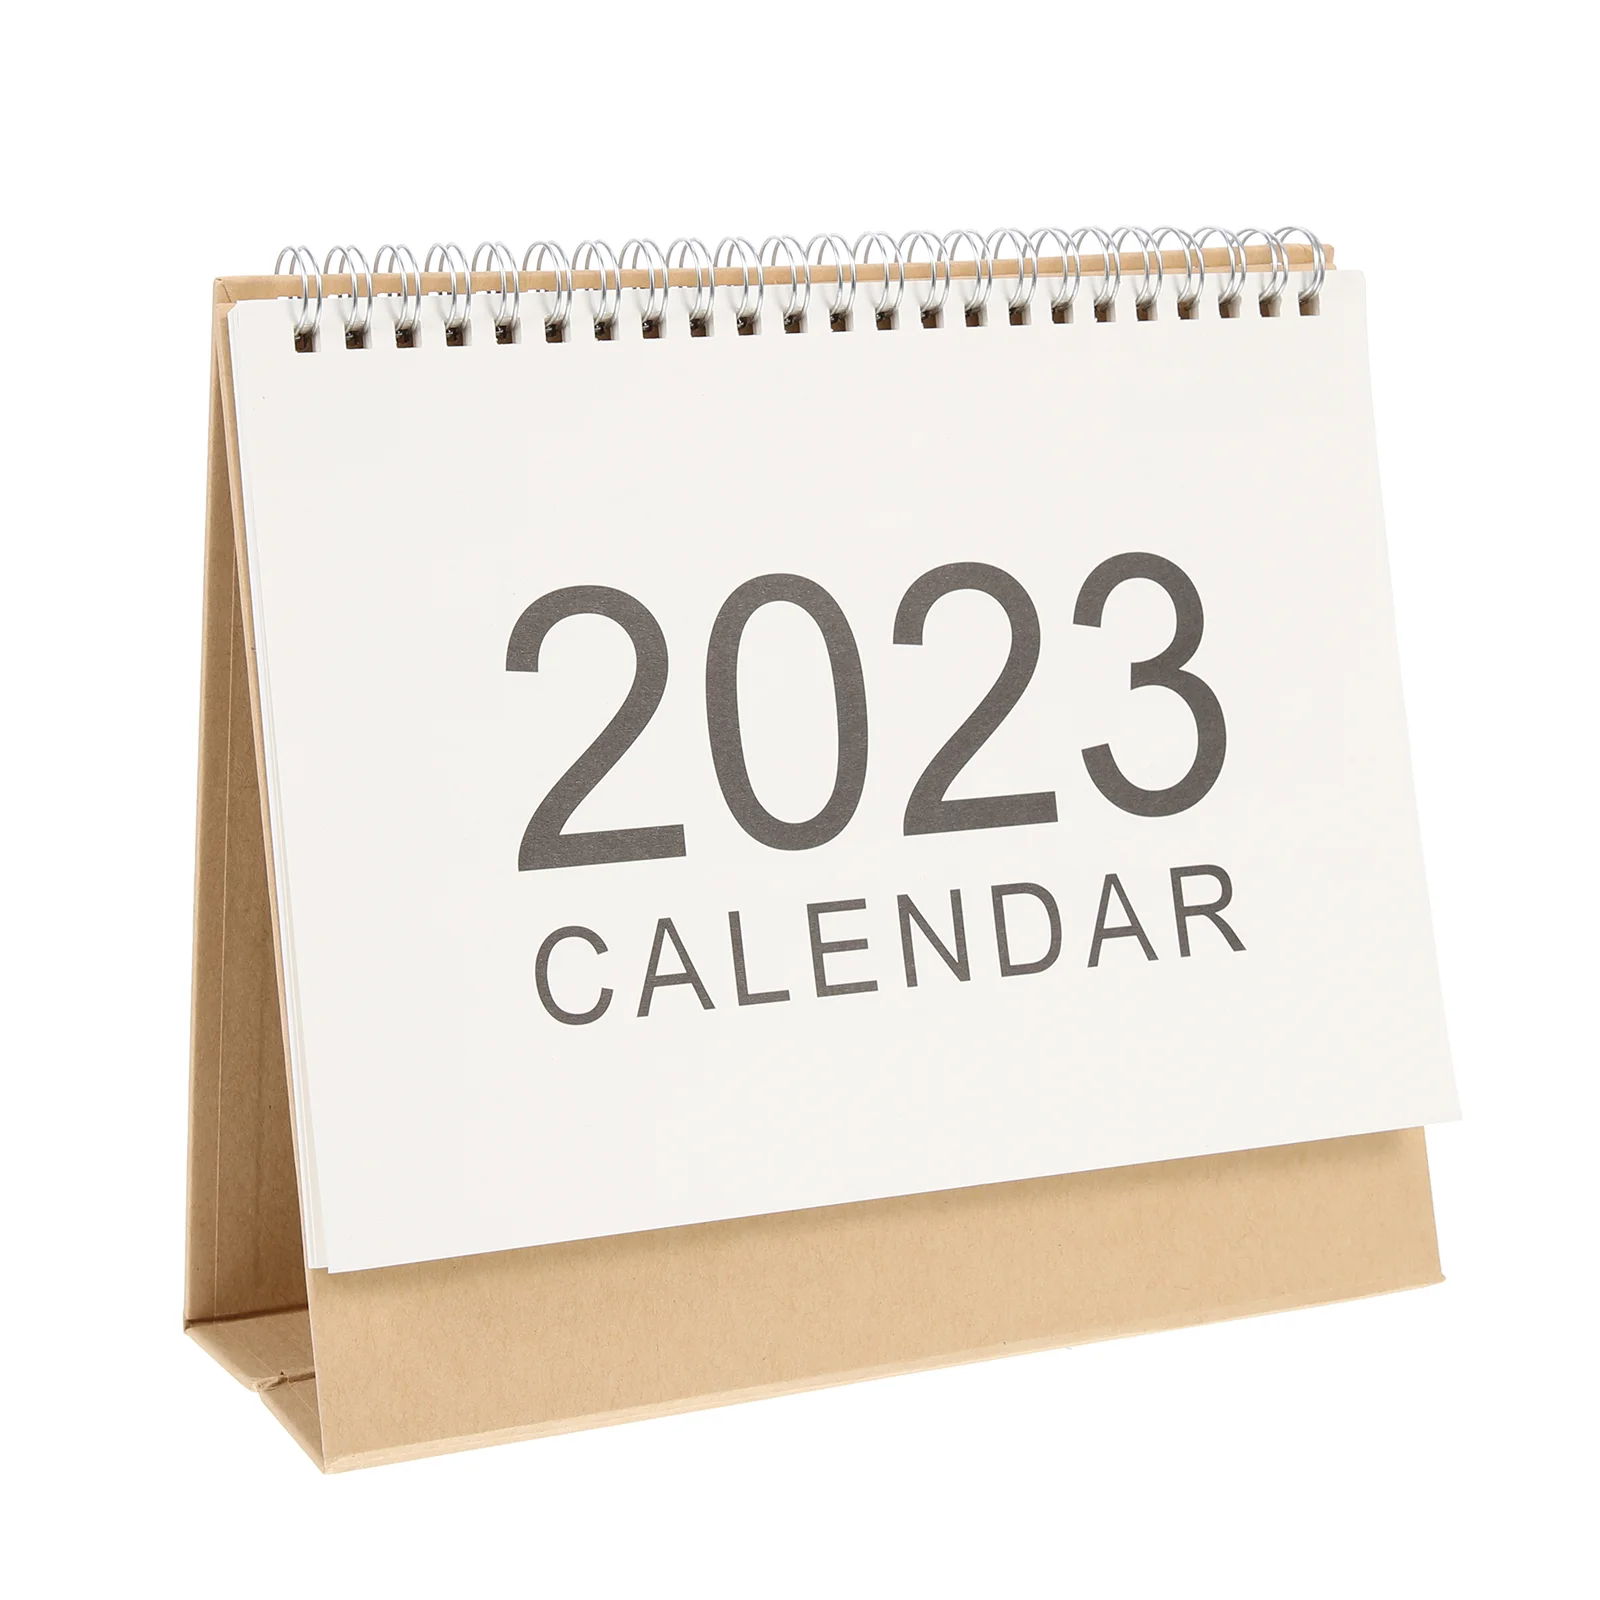 

Календарь 2023, настольный офисный стол с откидной крышкой, расписание, ежемесячная подставка, планировщик, органайзер для планировки 2022